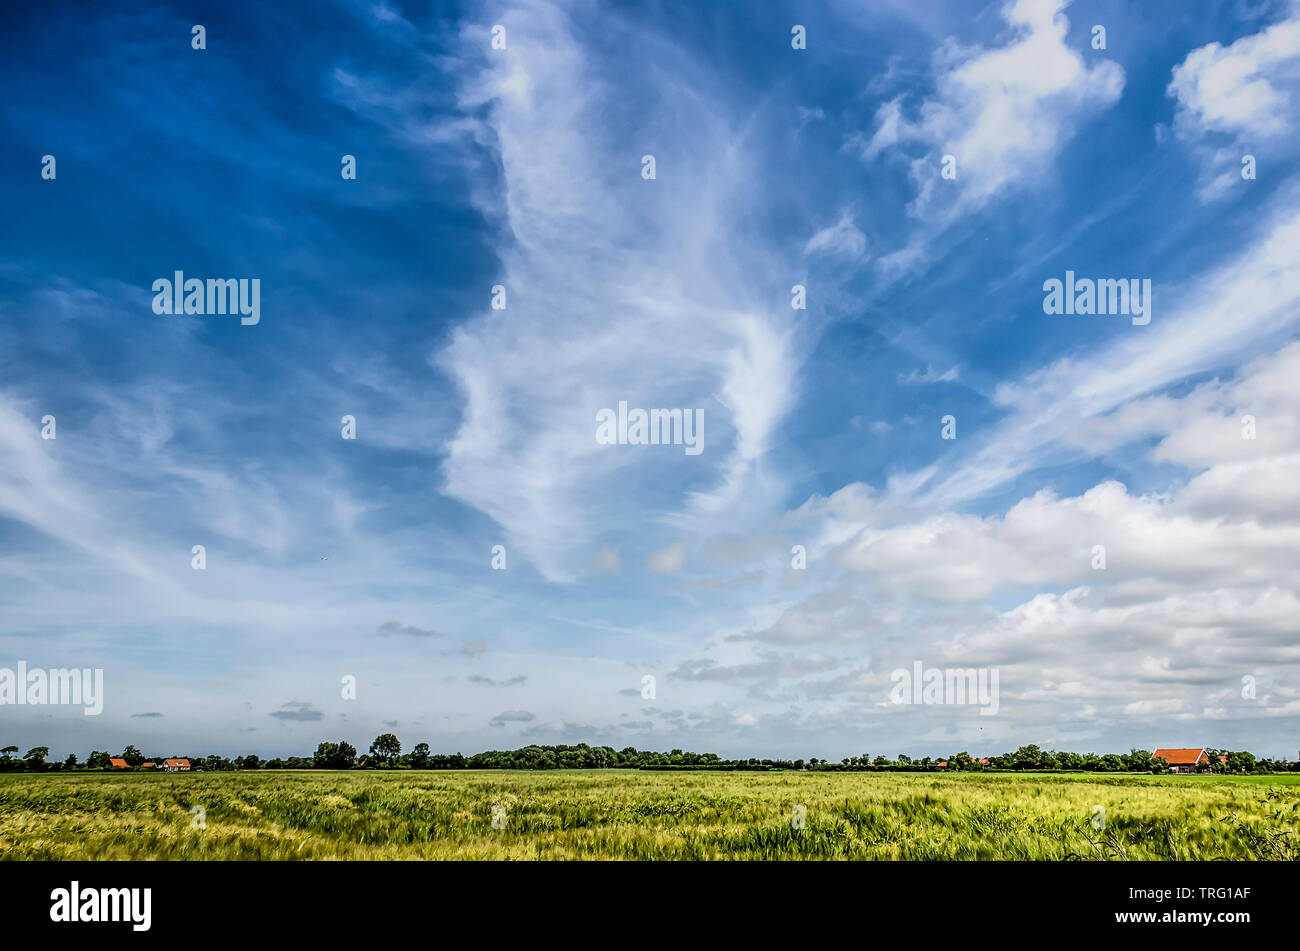 Surtout ciel bleu avec des nuages différents sur un large paysage ouvert avec maïs et int la distance certaines fermes et arbres de l'île Banque D'Images